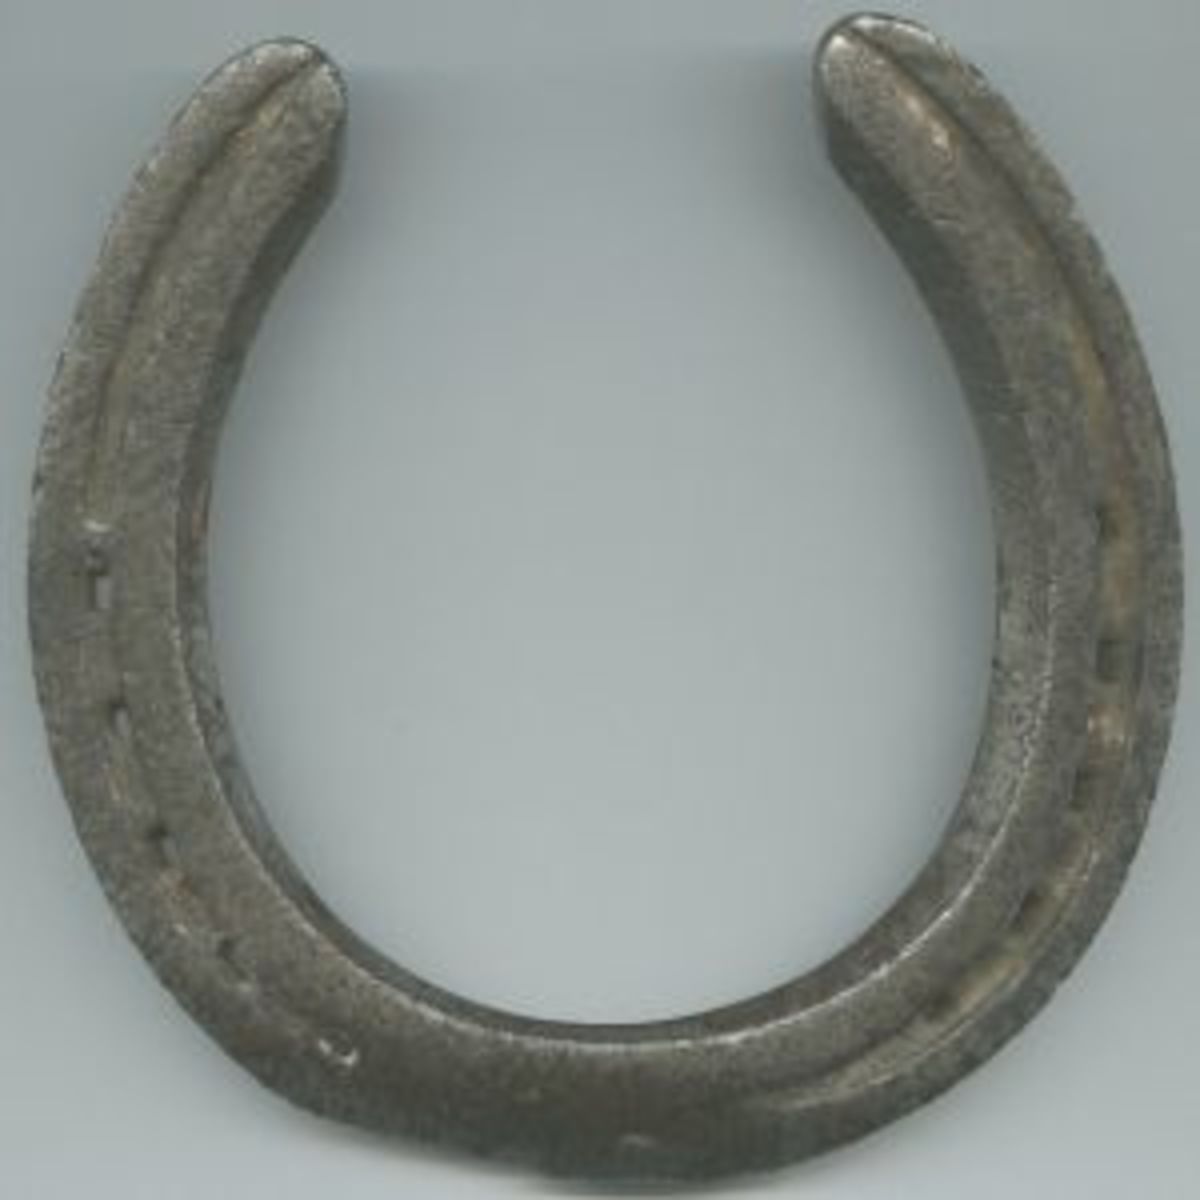 Horseshoe prosperity symbol